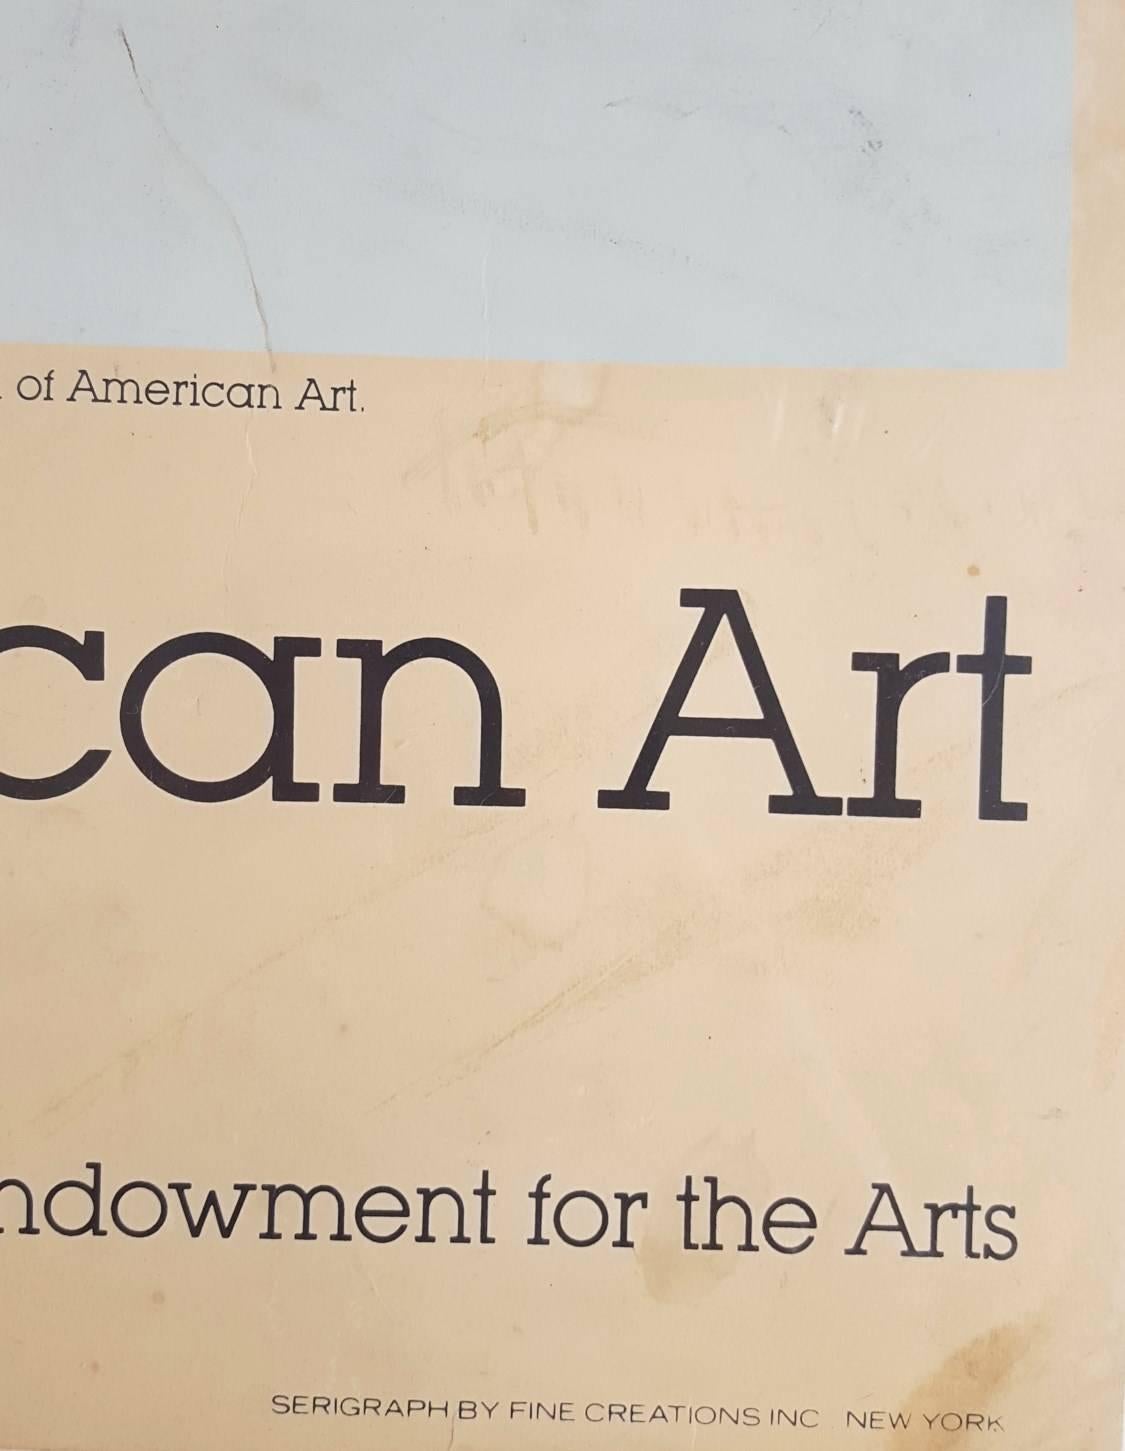 Whitney Museum of American Art: Roy Lichtenstein 5